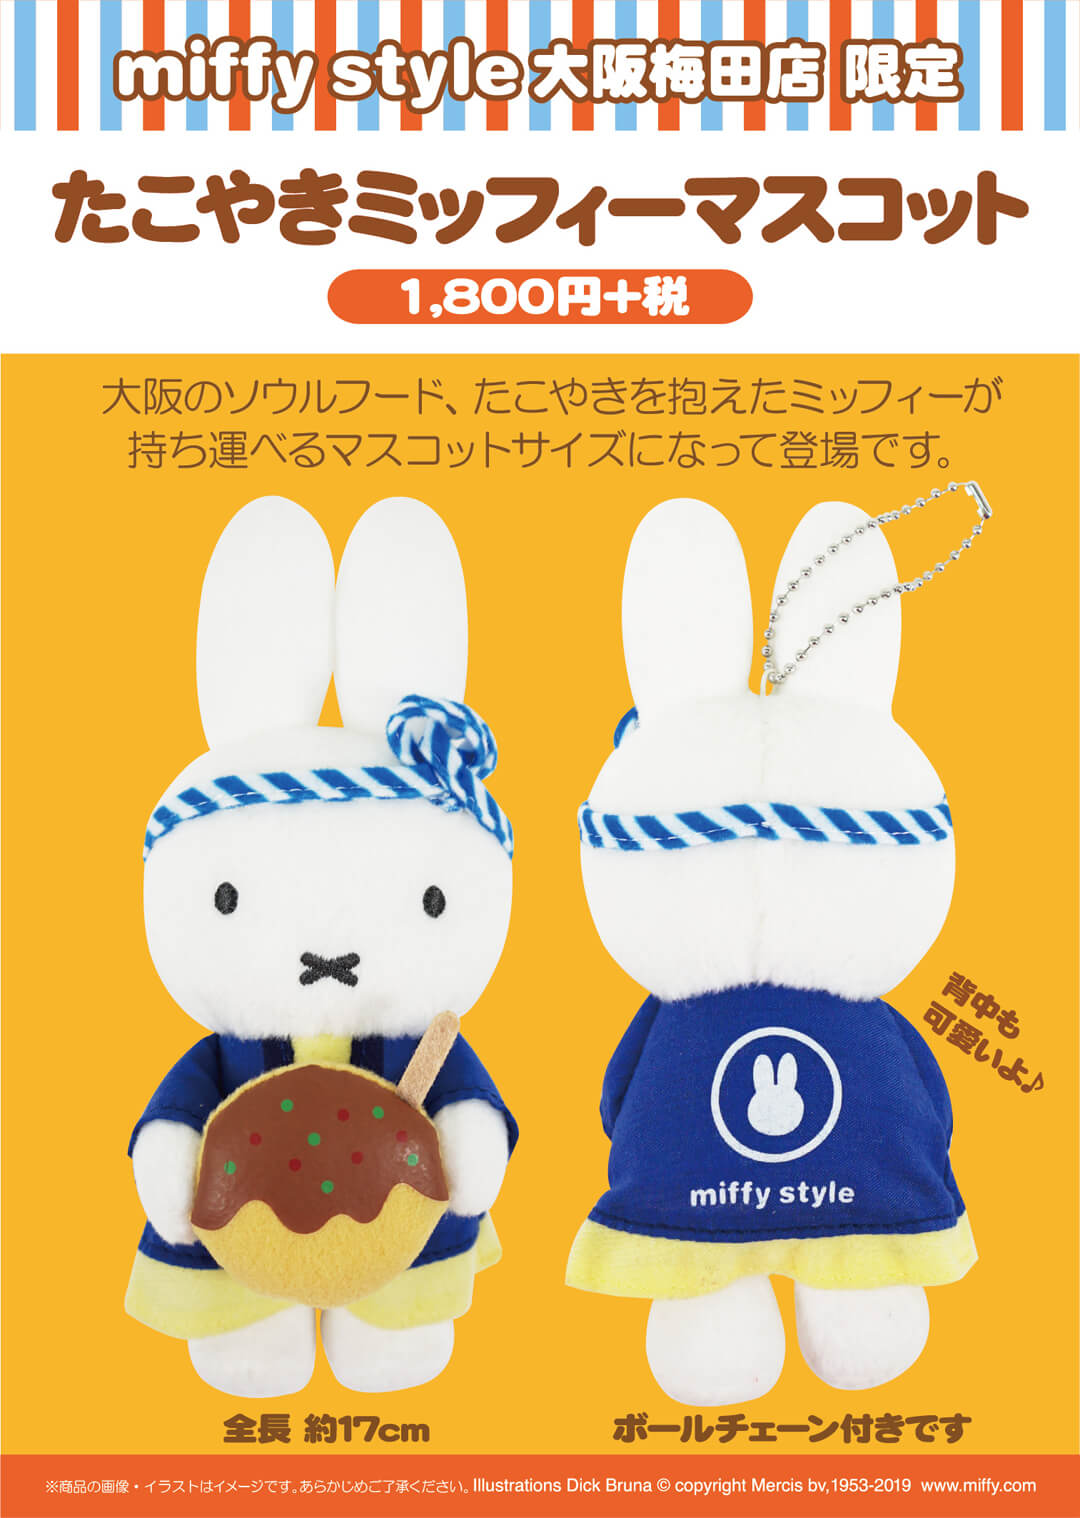 8月3日 土 発売予定 Miffy Style 大阪梅田限定 たこ焼きミッフィーマスコット キデイランドへようこそ